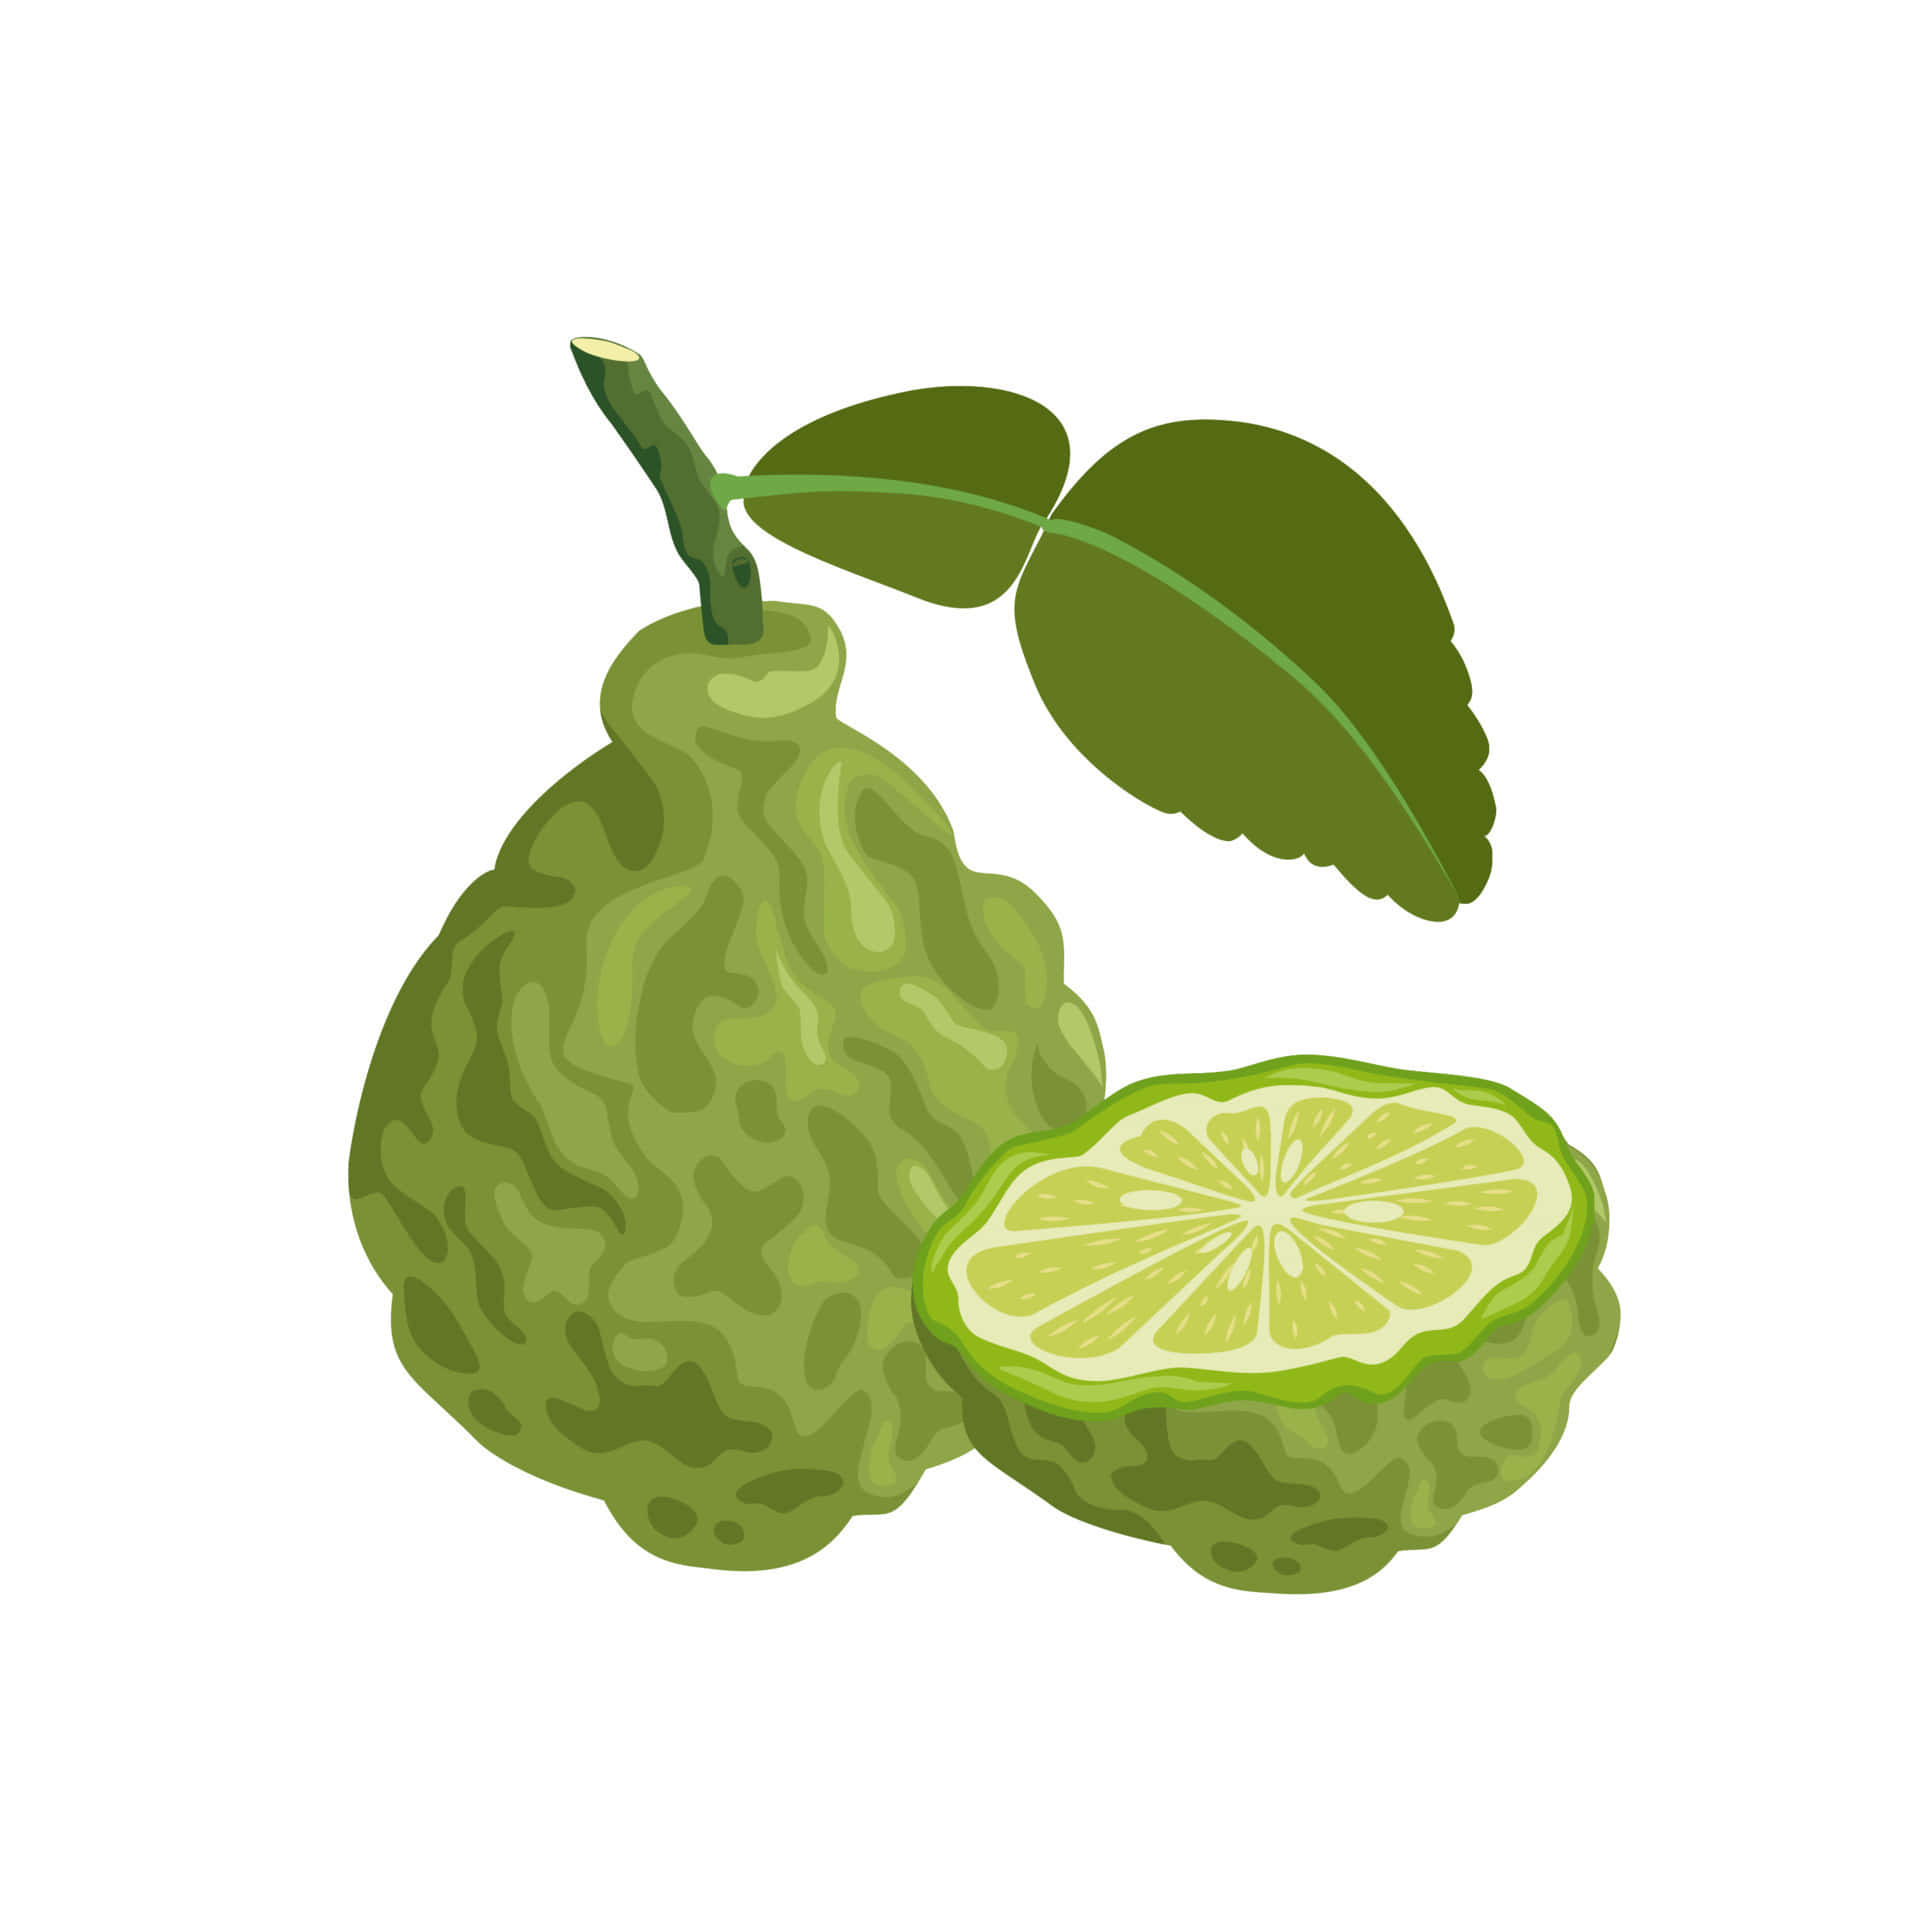 Kaffir Lime Fruit Digital Drawing Wallpaper